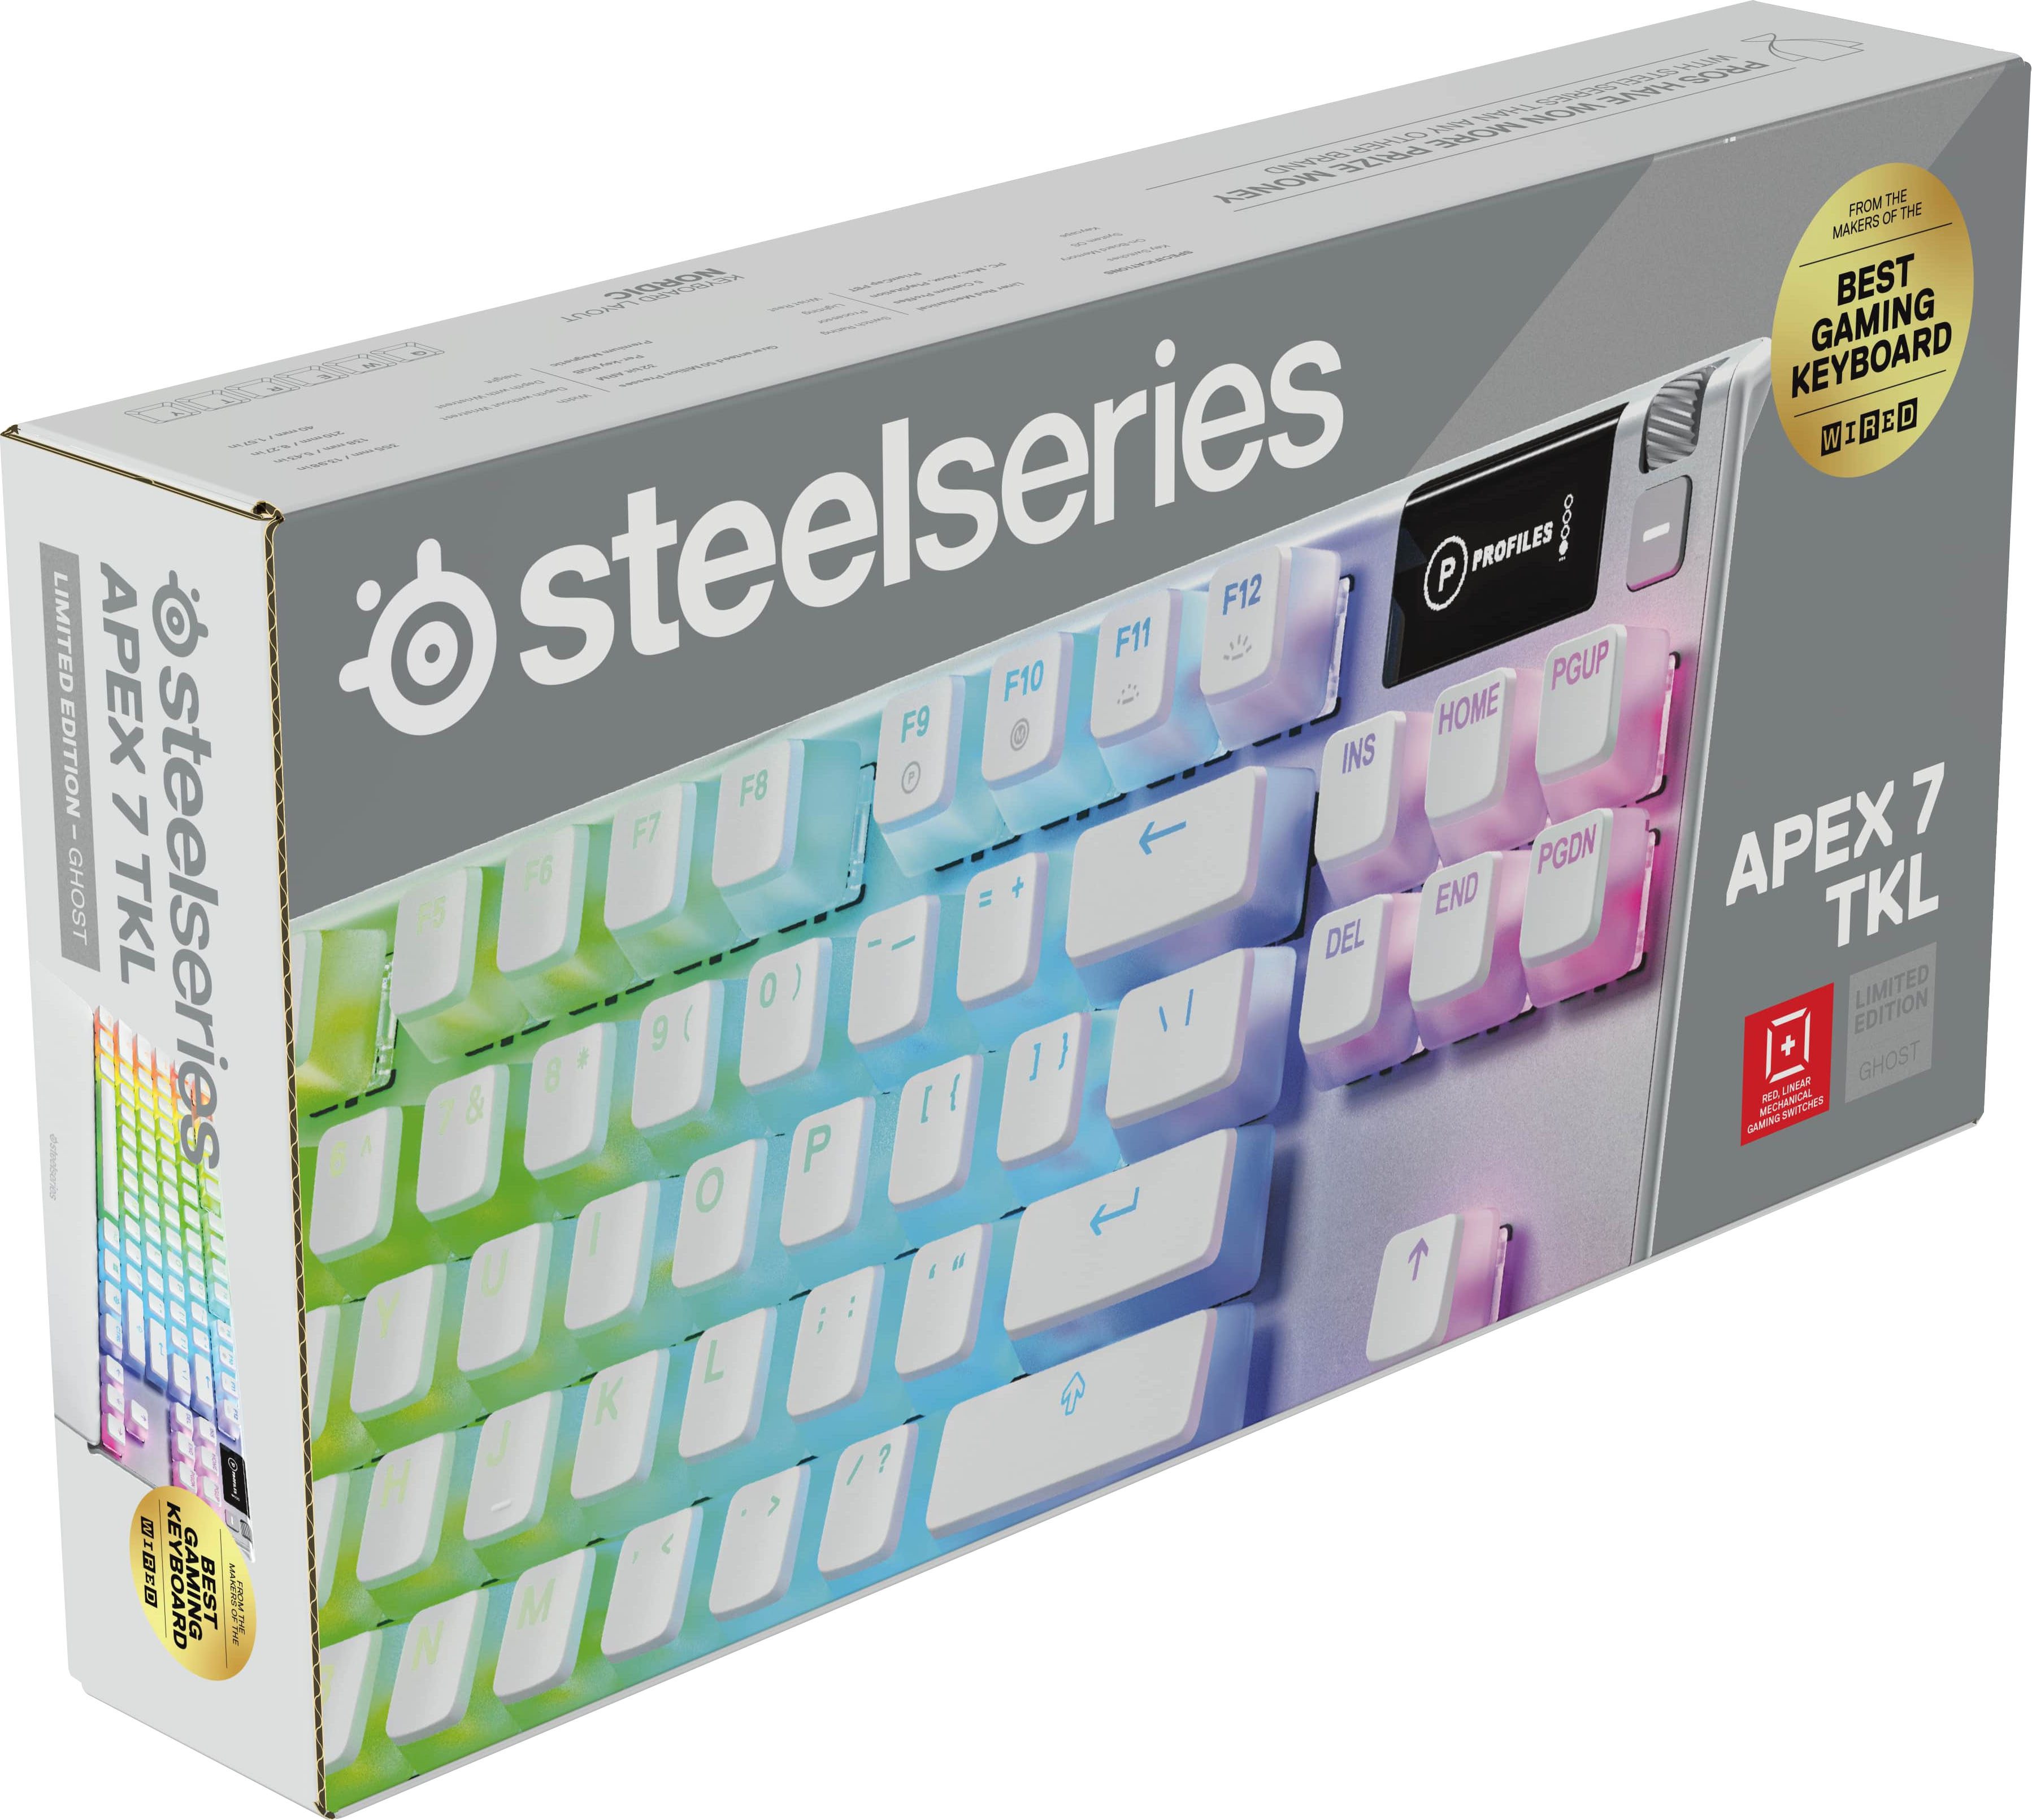 steelseries ghost keyboard